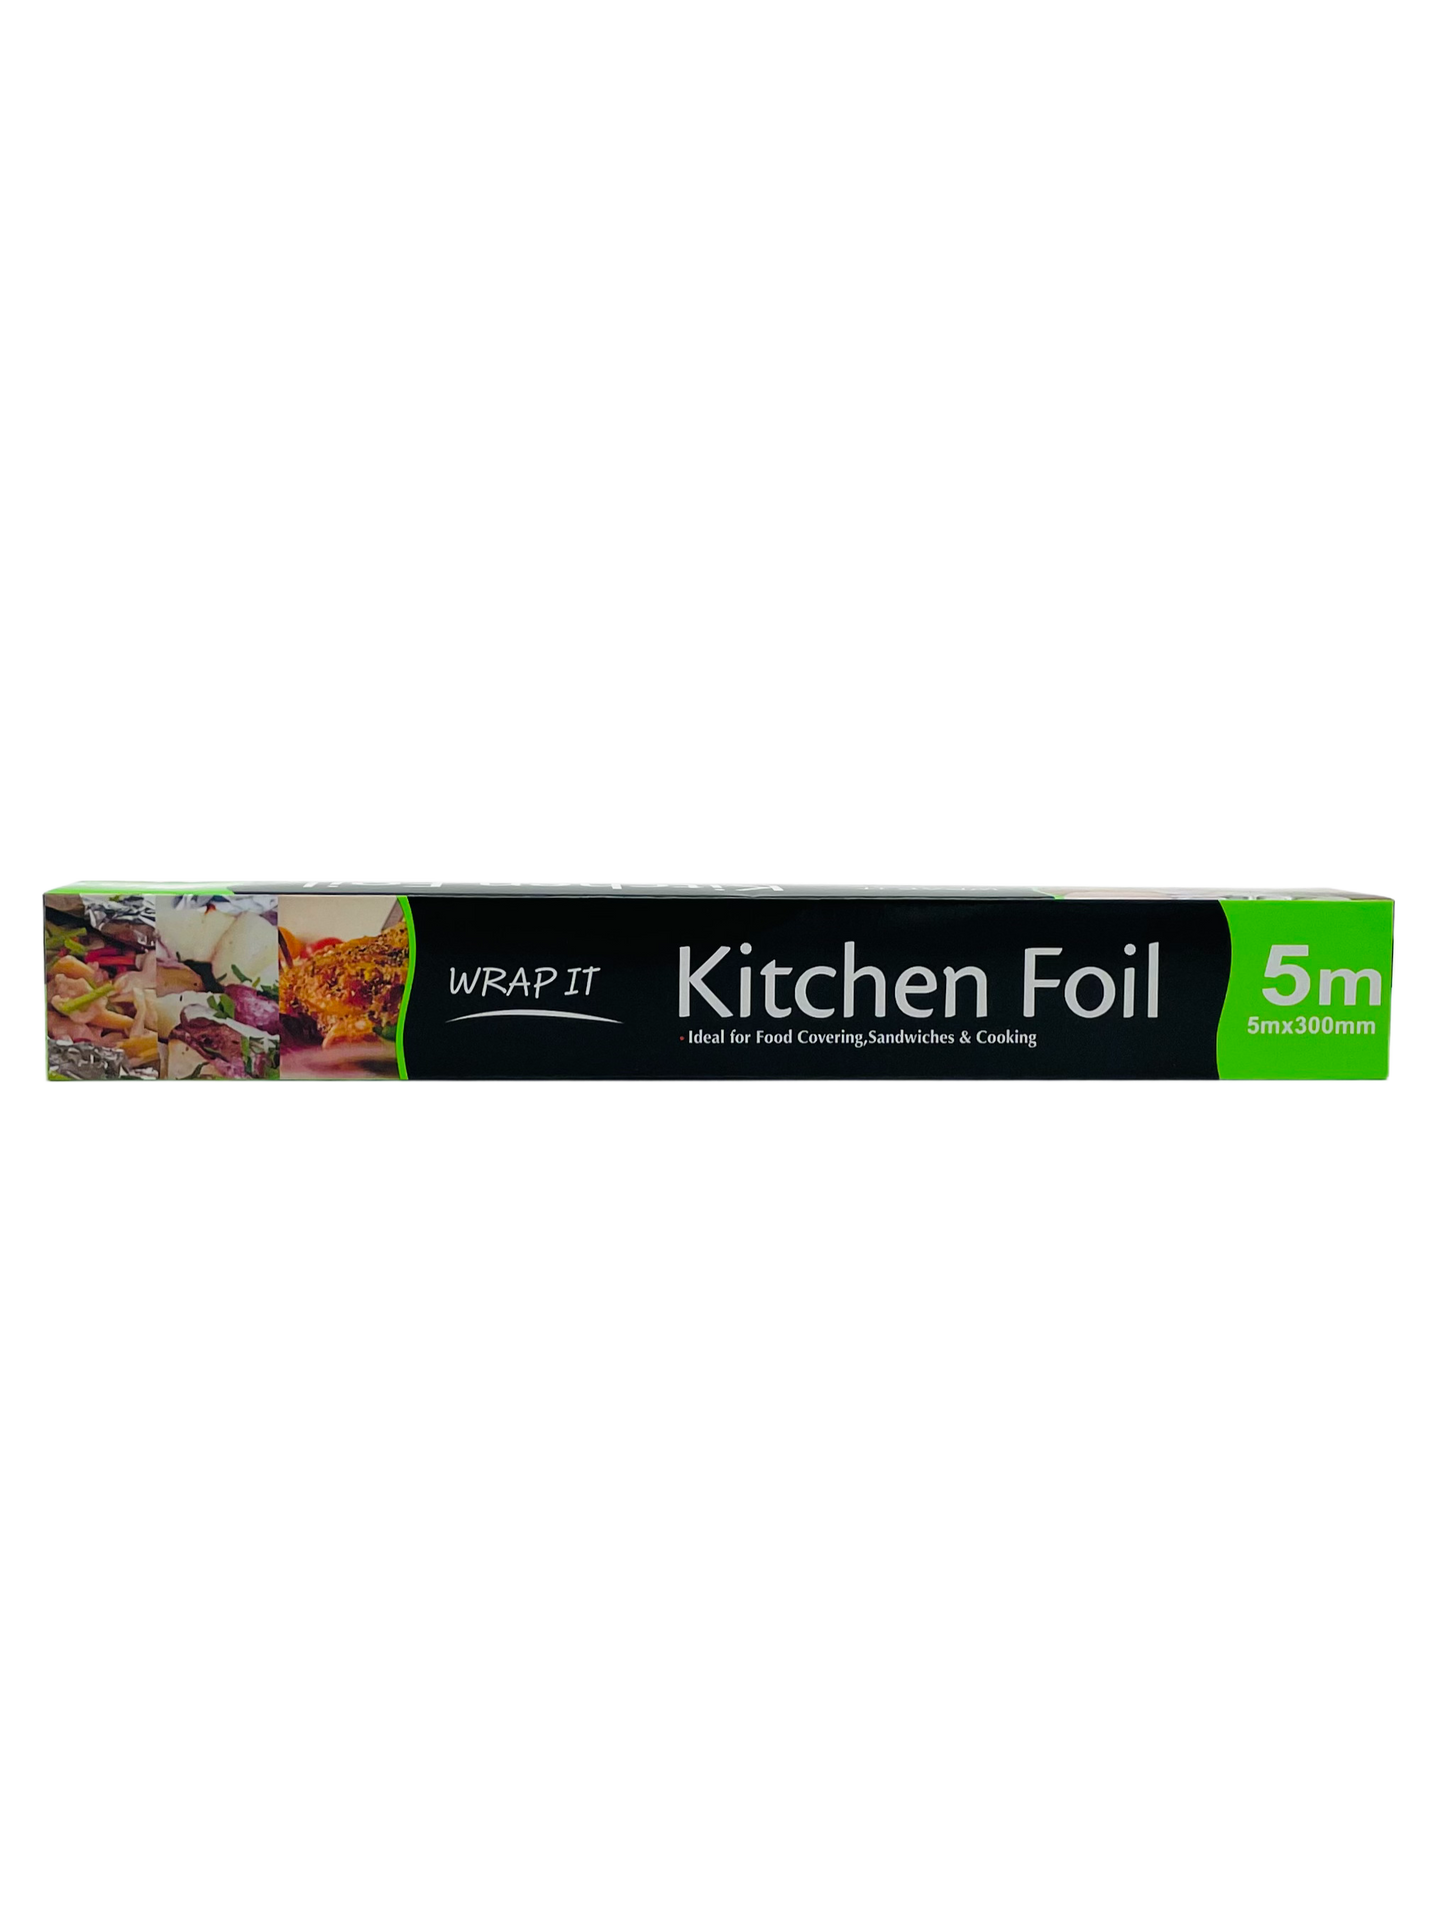 Wrap It Kitchen Foil 5m x 30cm